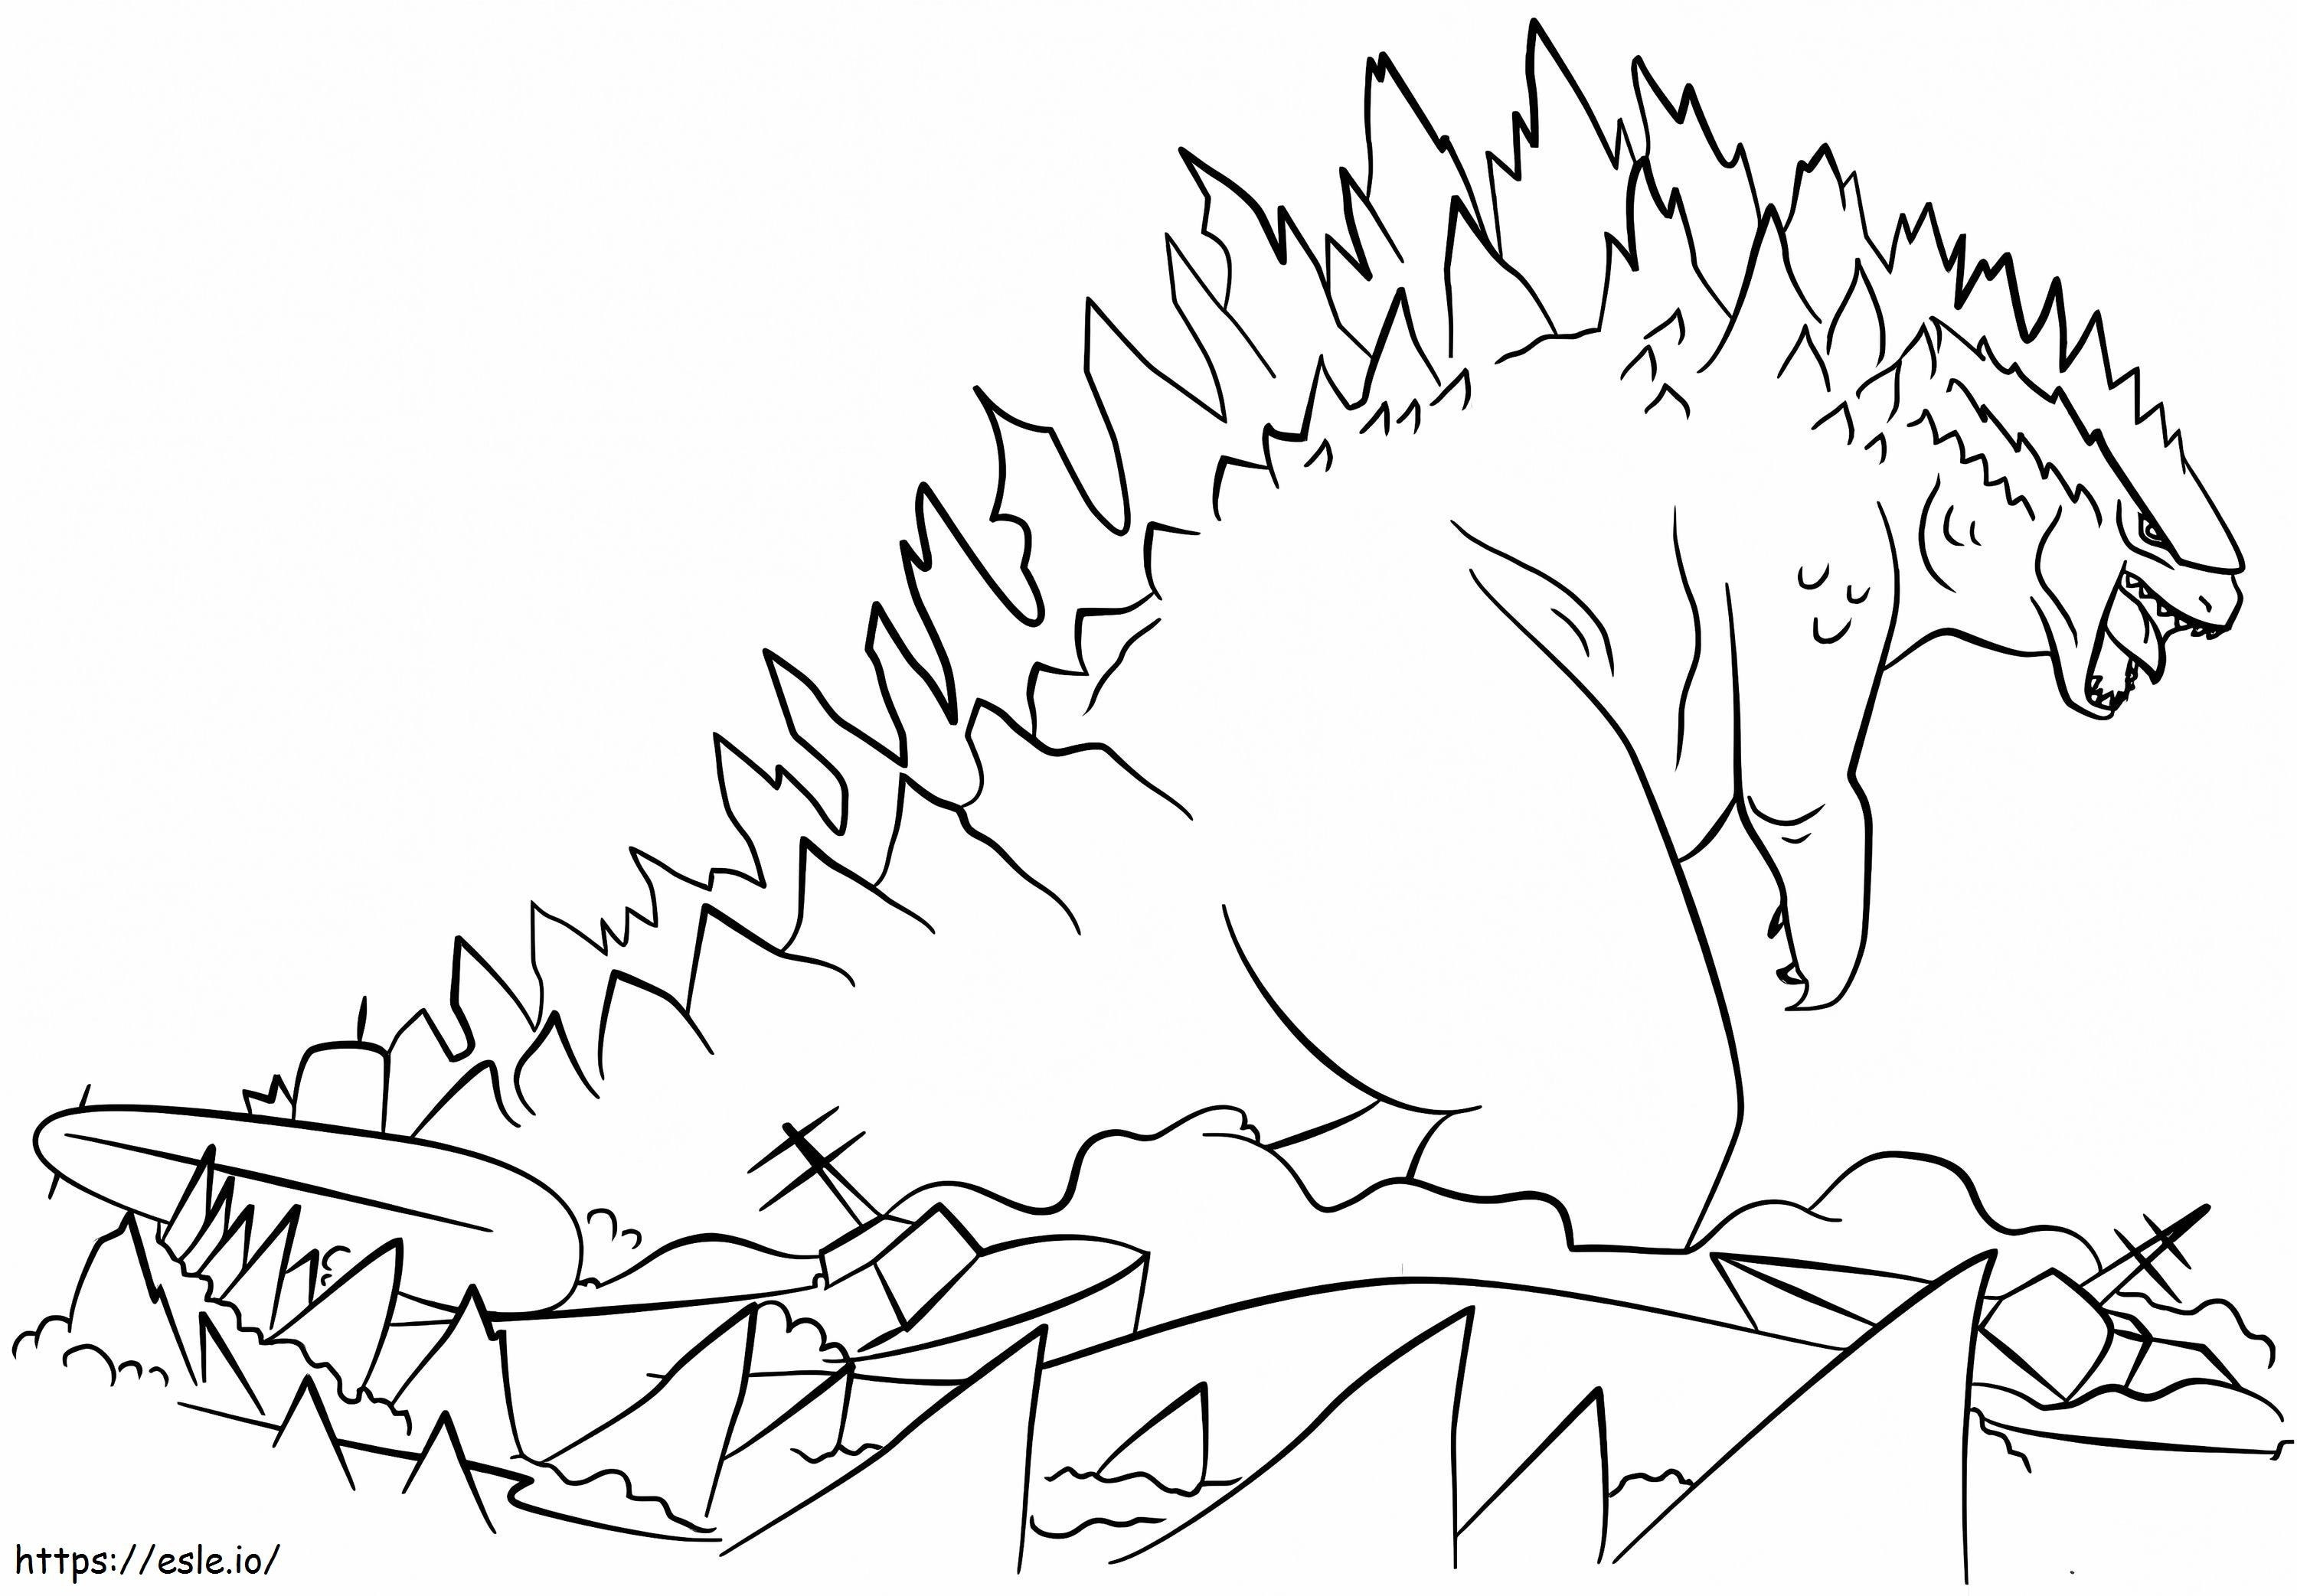 İnanılmaz Godzilla boyama